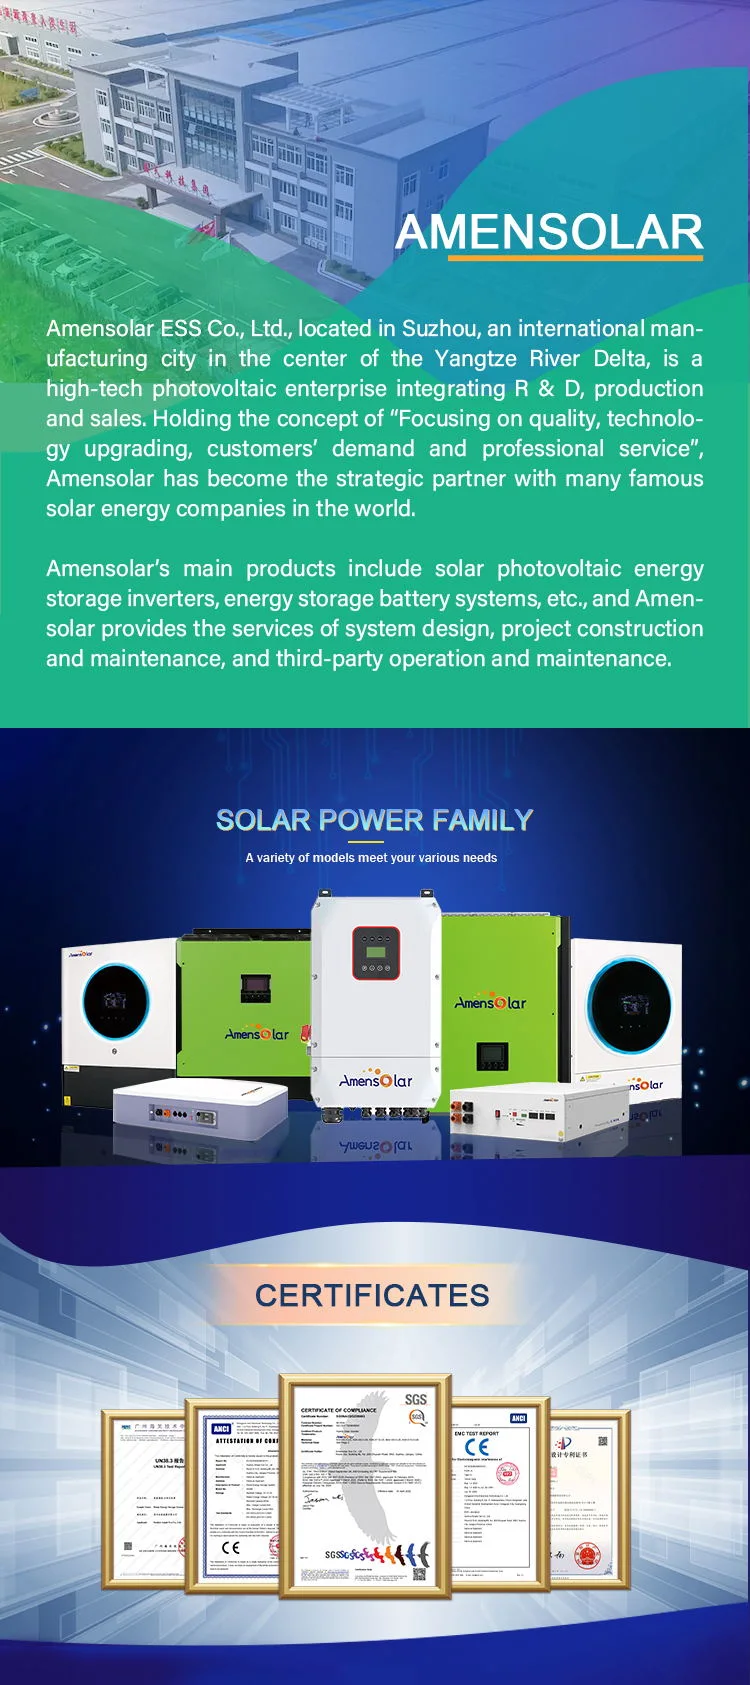 Amensolar 5kw 8kw 10kw on/off Grid Hybrid Solar Inverter Hot Sale Ess Inverter for Us Market 110V 120V Split Phase Jamaica 5kVA Solar Inverter Power Inverter